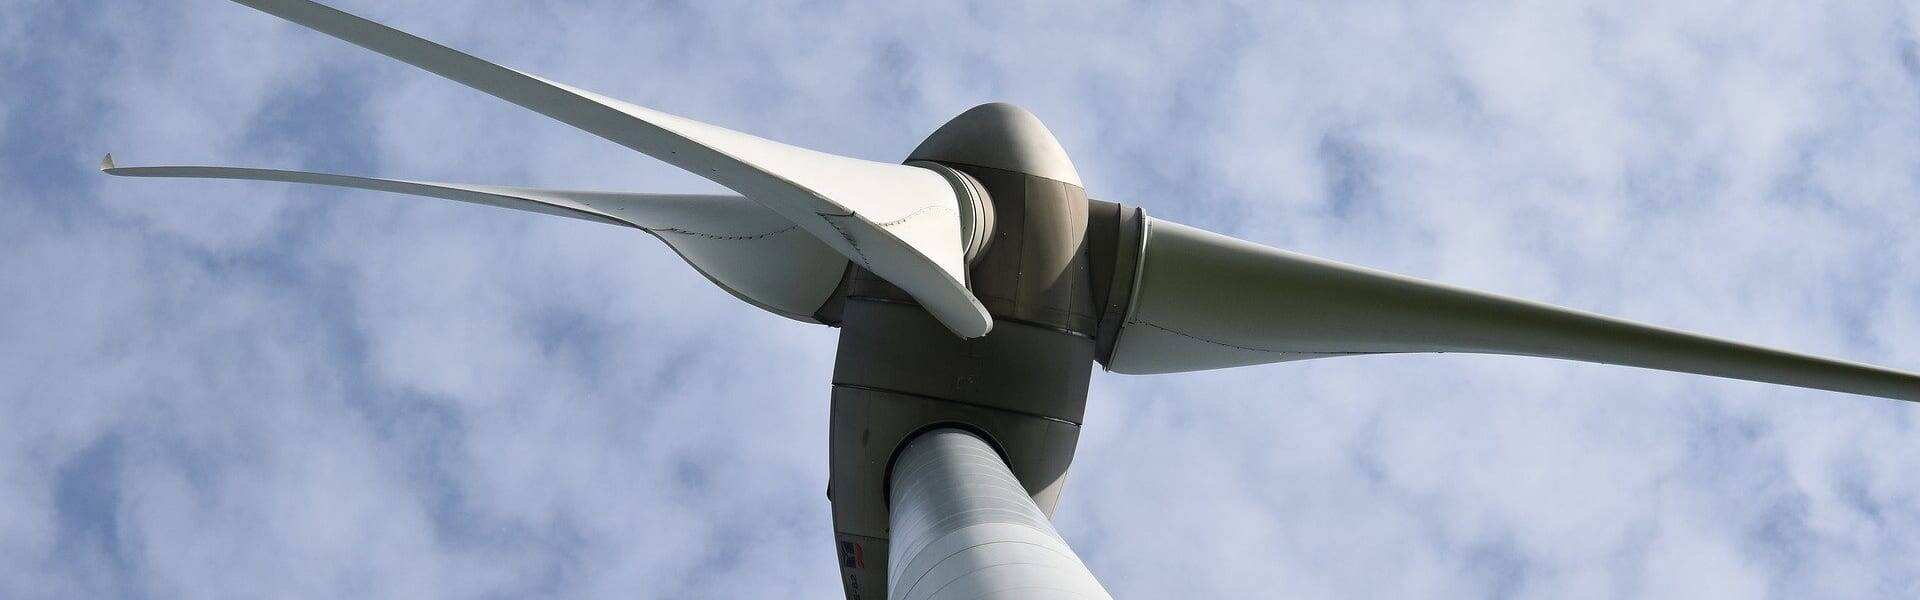 Ofgem begins investigation over wind farms ‘overstating output’